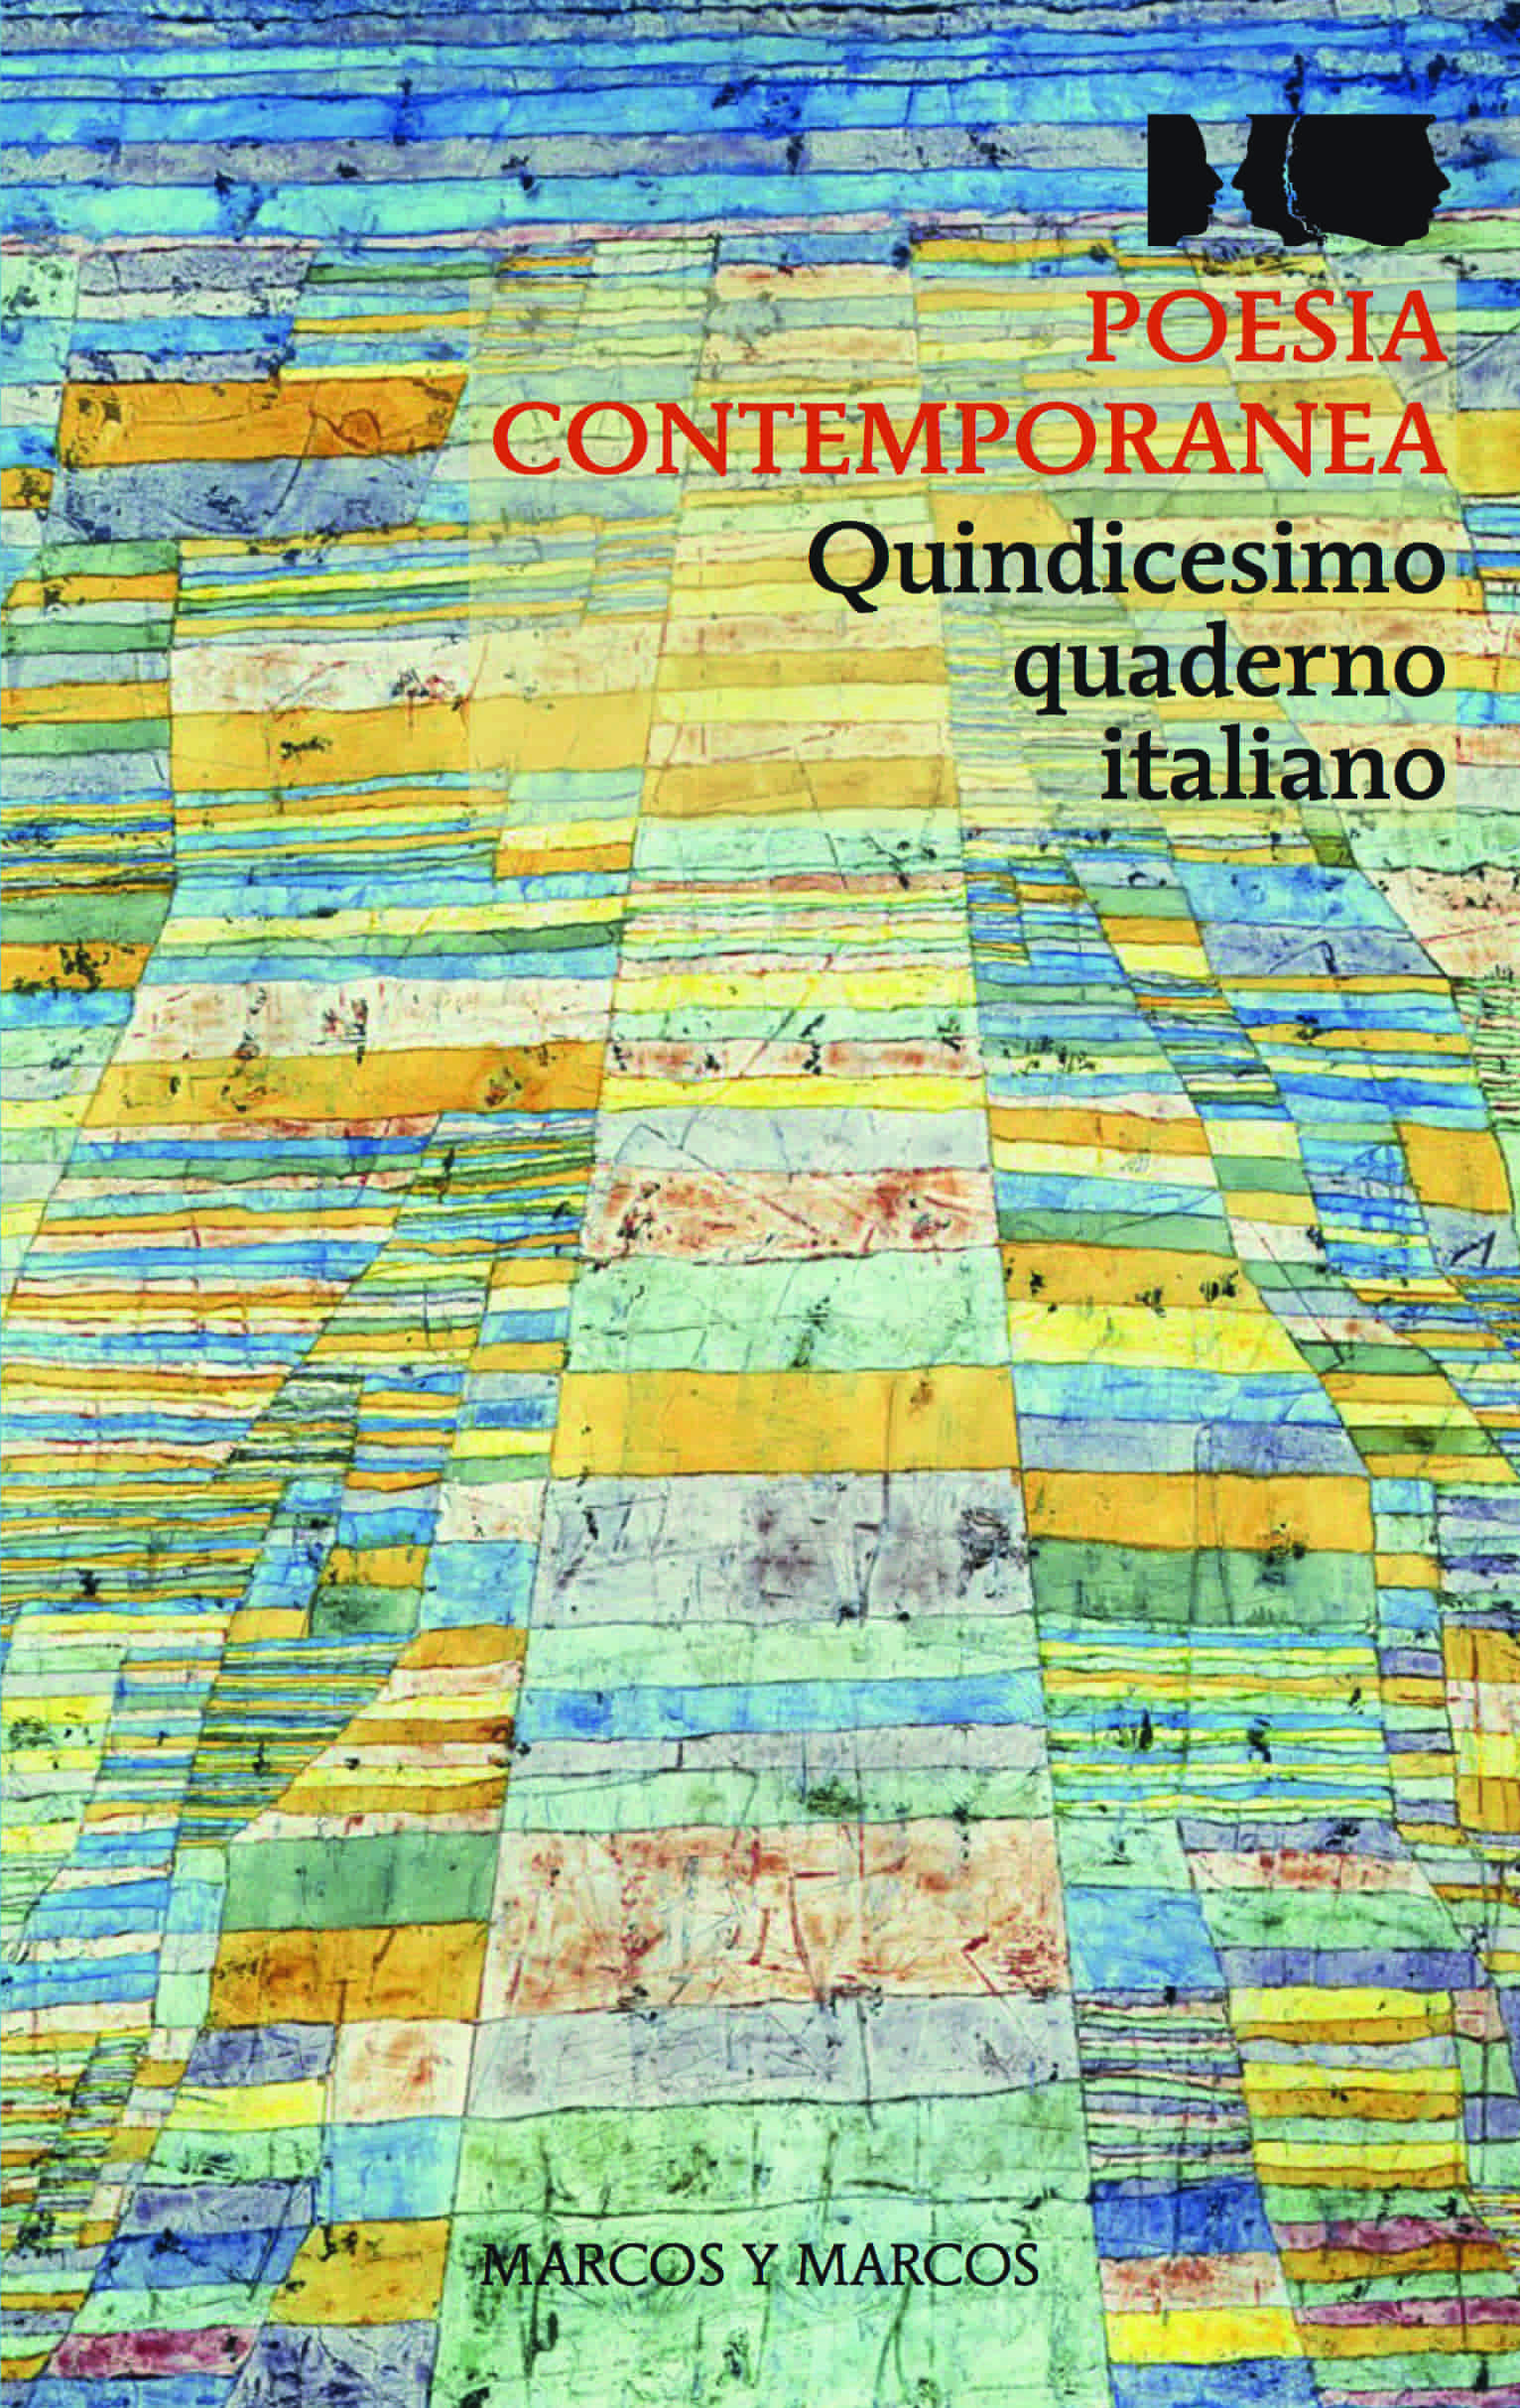 Copertina del libro Quindicesimo quaderno italiano di poesia contemporanea